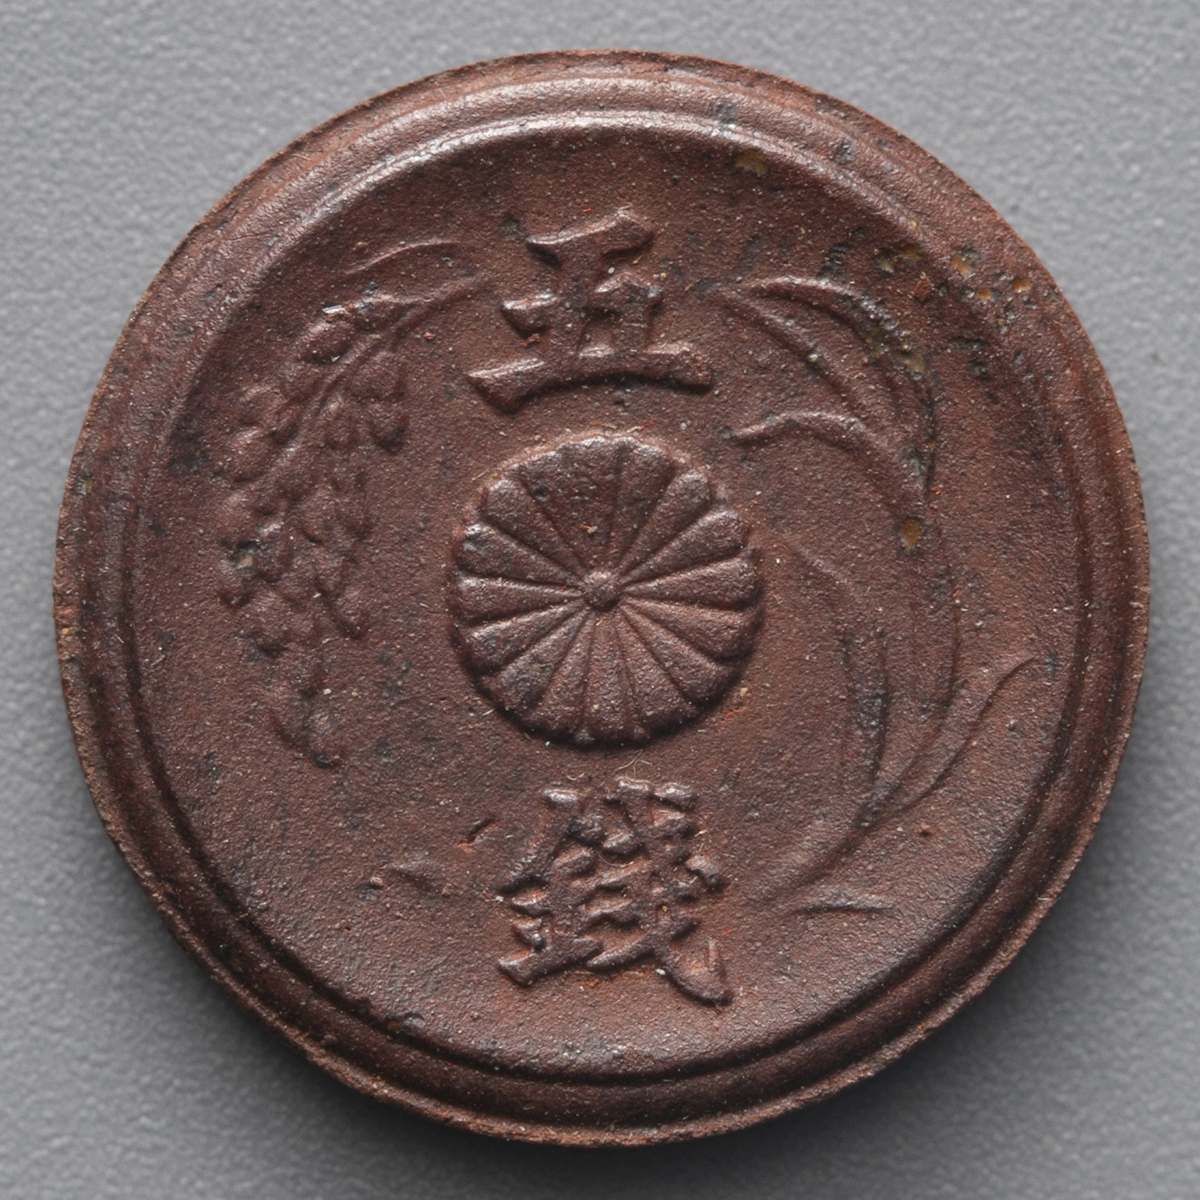 貨幣博物館 | 日本 未発行五銭陶貨 5Sen Porcelain 昭和20年(1945) UNC